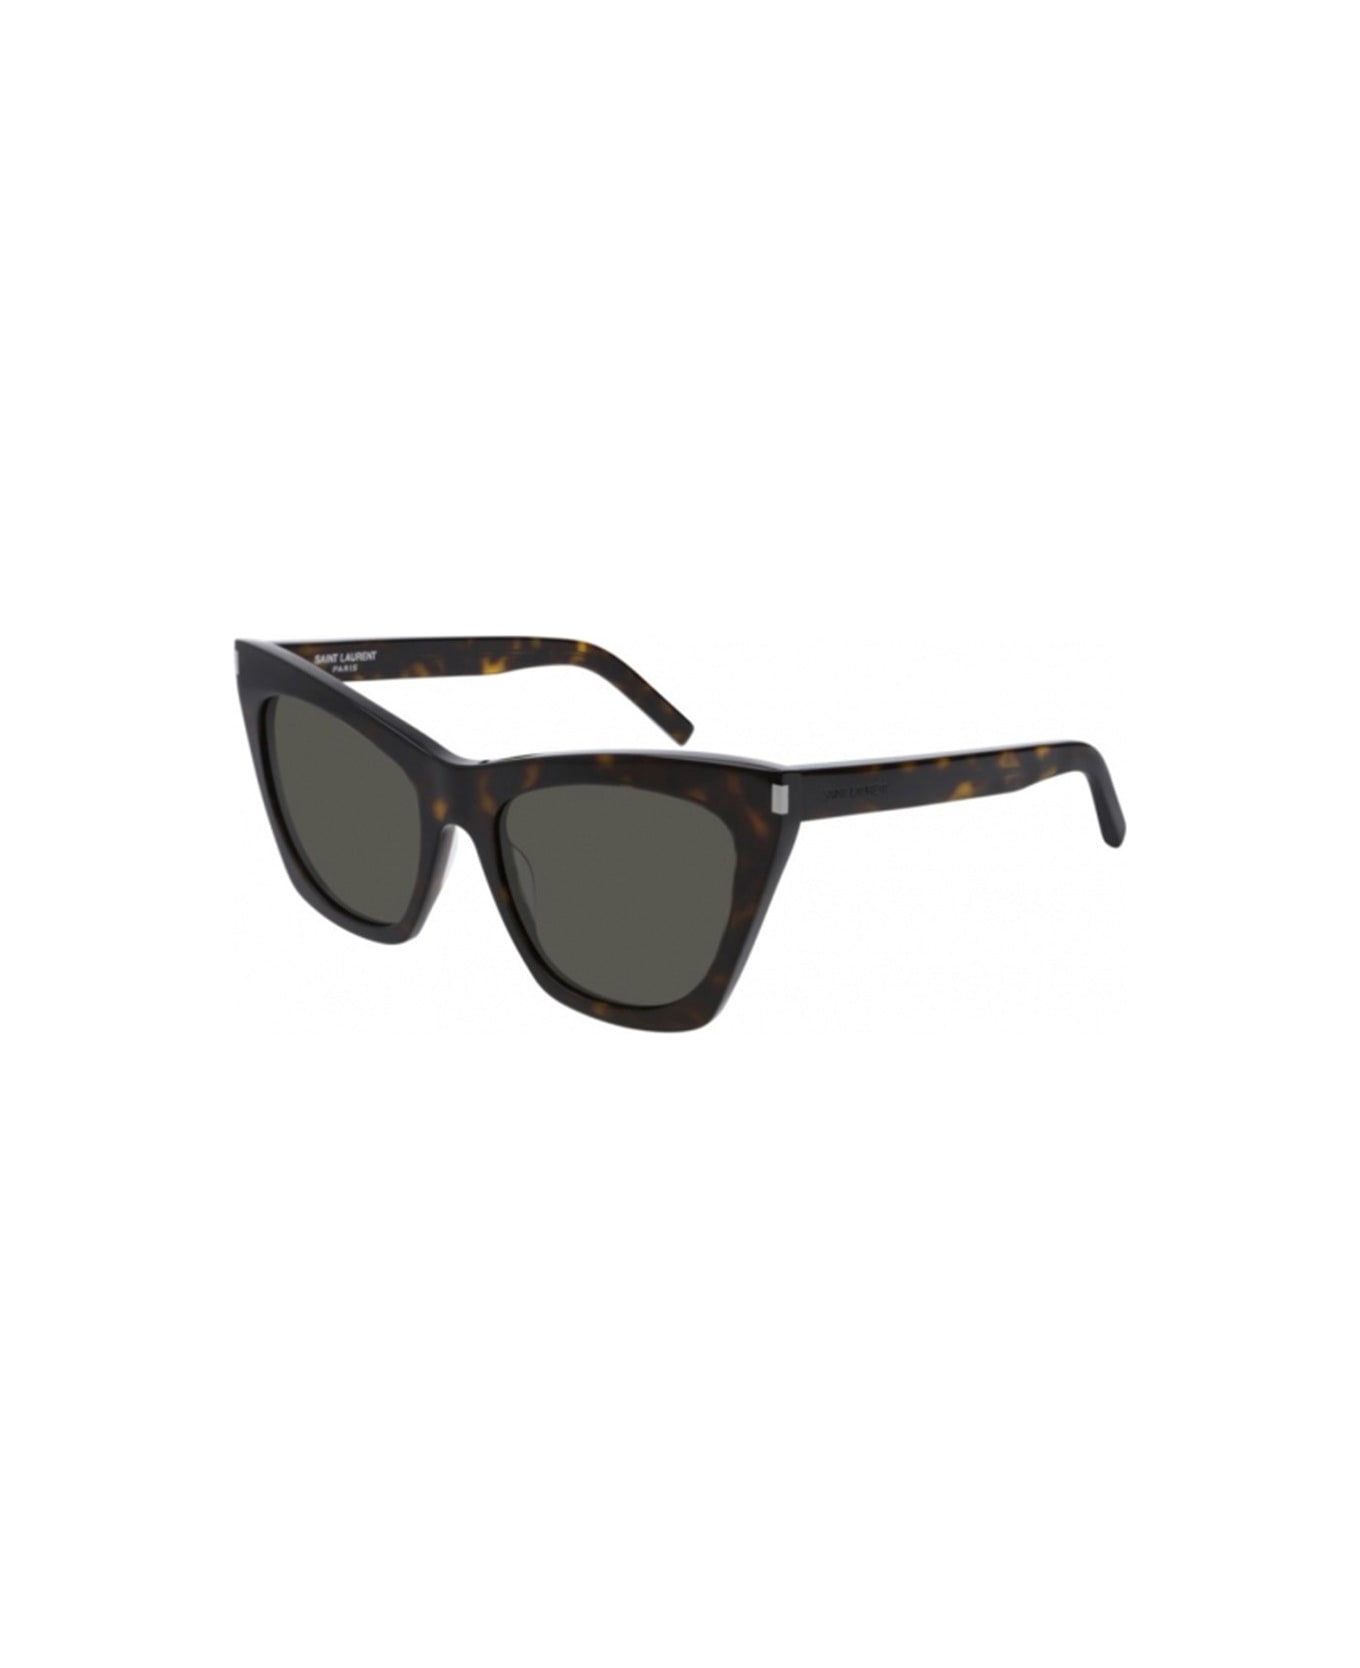 Saint Laurent Eyewear Sunglasses - Marrone tartarugato/Verde サングラス